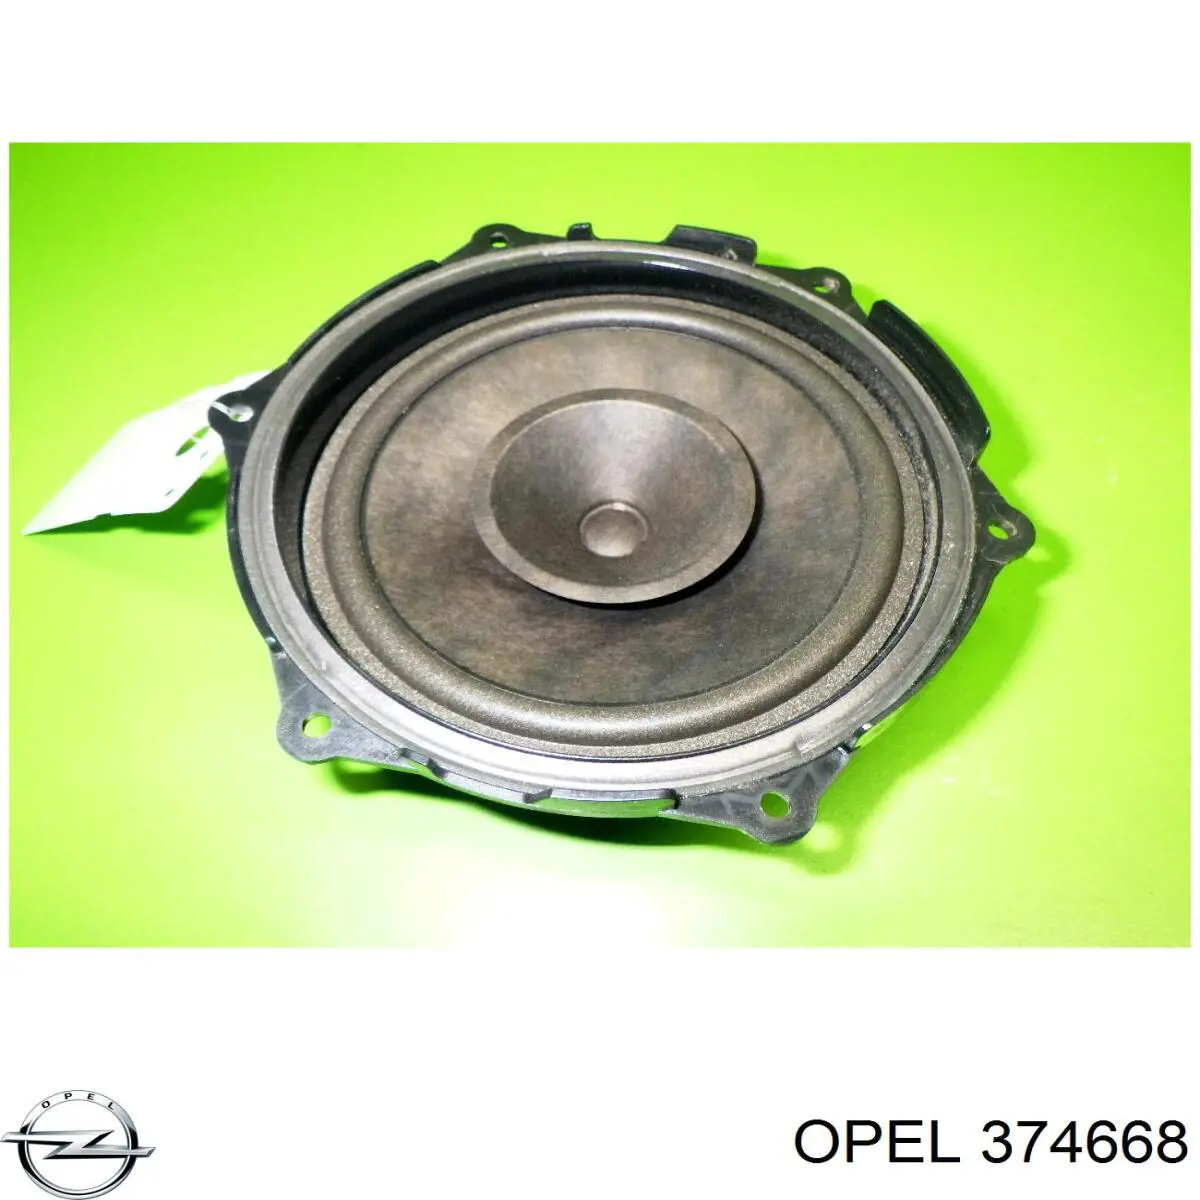 374668 Opel semieje de transmisión intermedio